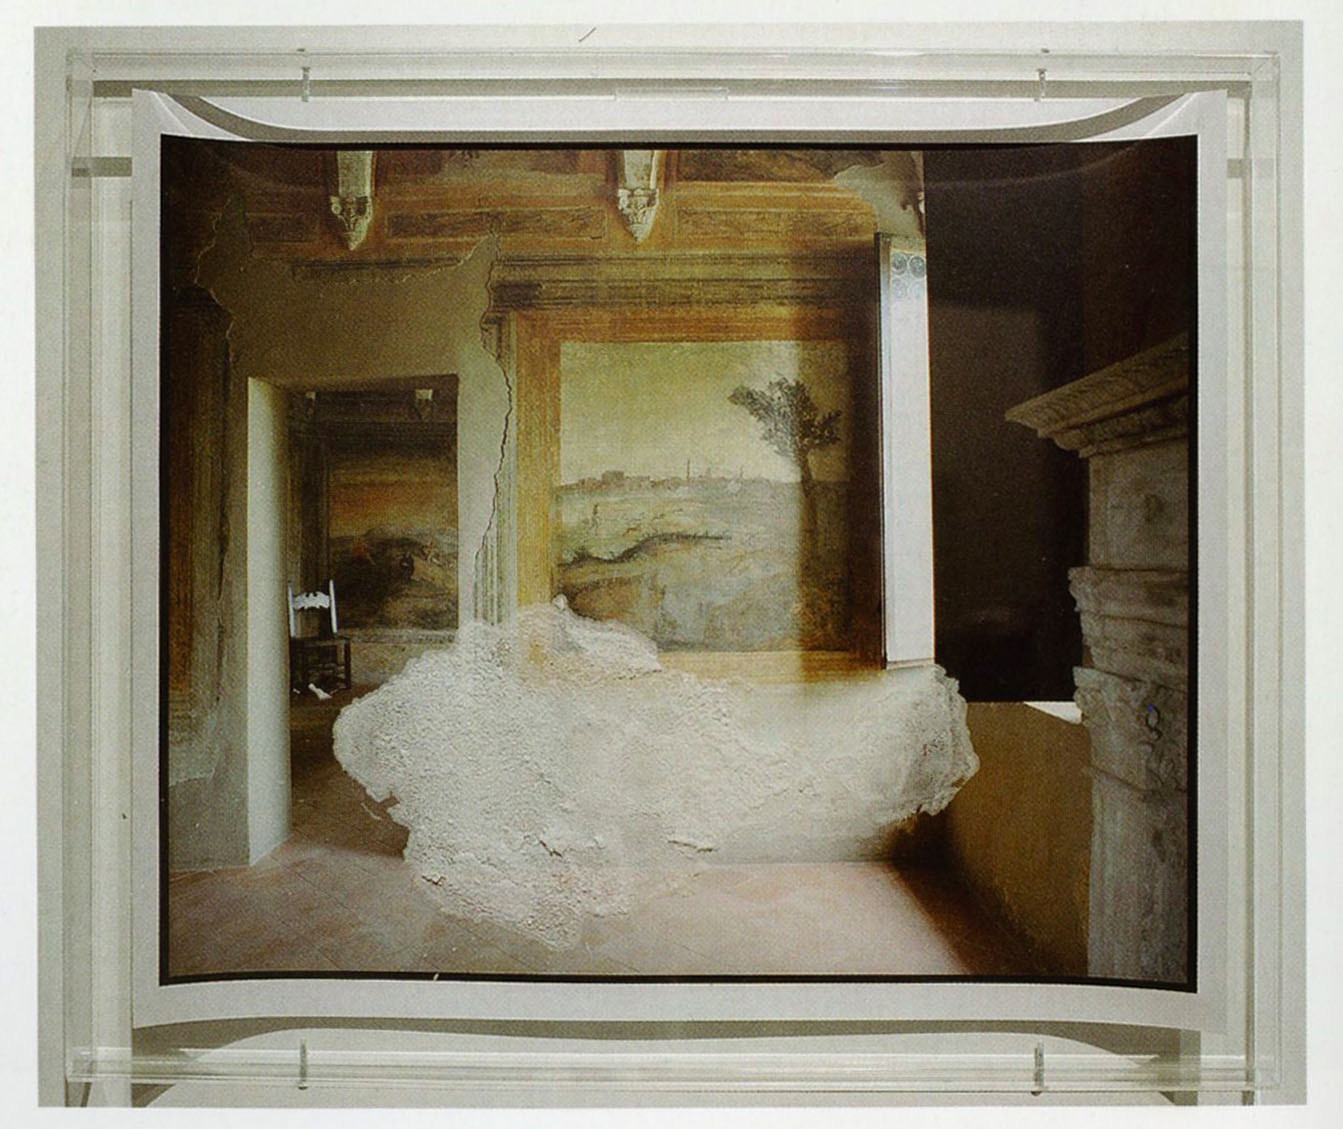   Franco Guerzoni, Dentro l’immagine, 2004, cristalli di salnitro su fotografia di Luigi Ghirri del 1985, collezione privata, Modena